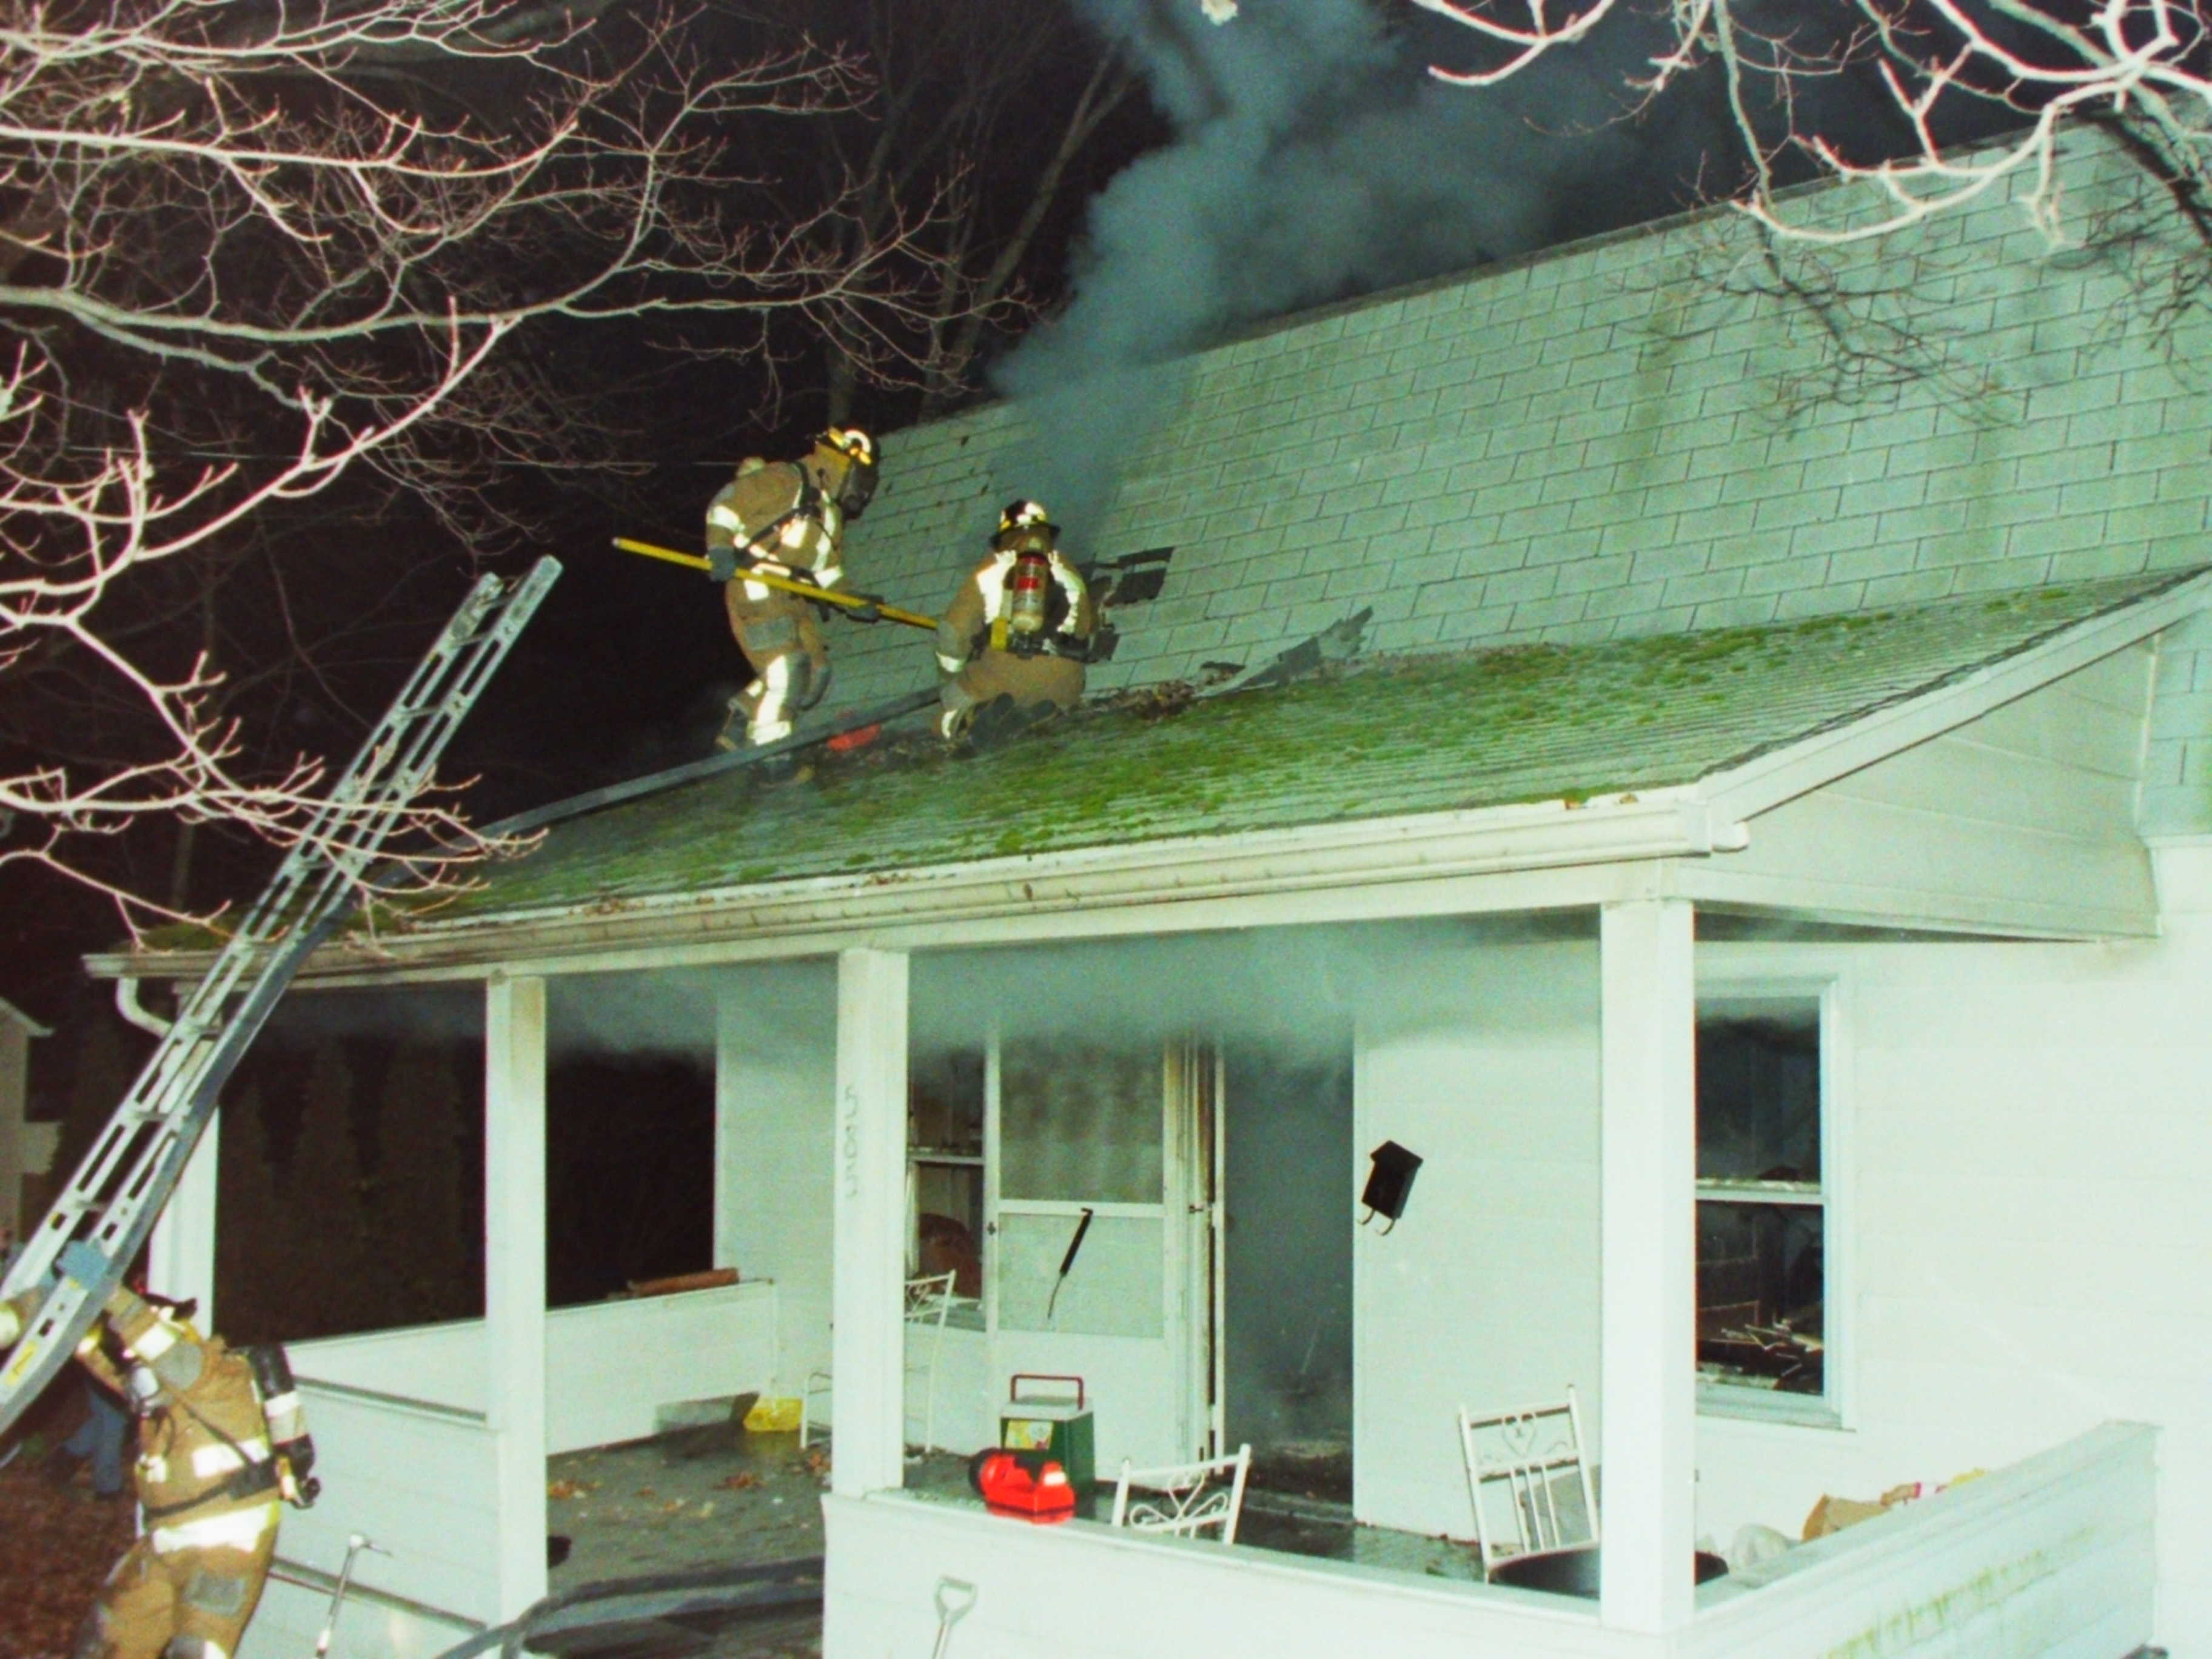 00-00-98  Response - Housefire 815 Hooper Rd